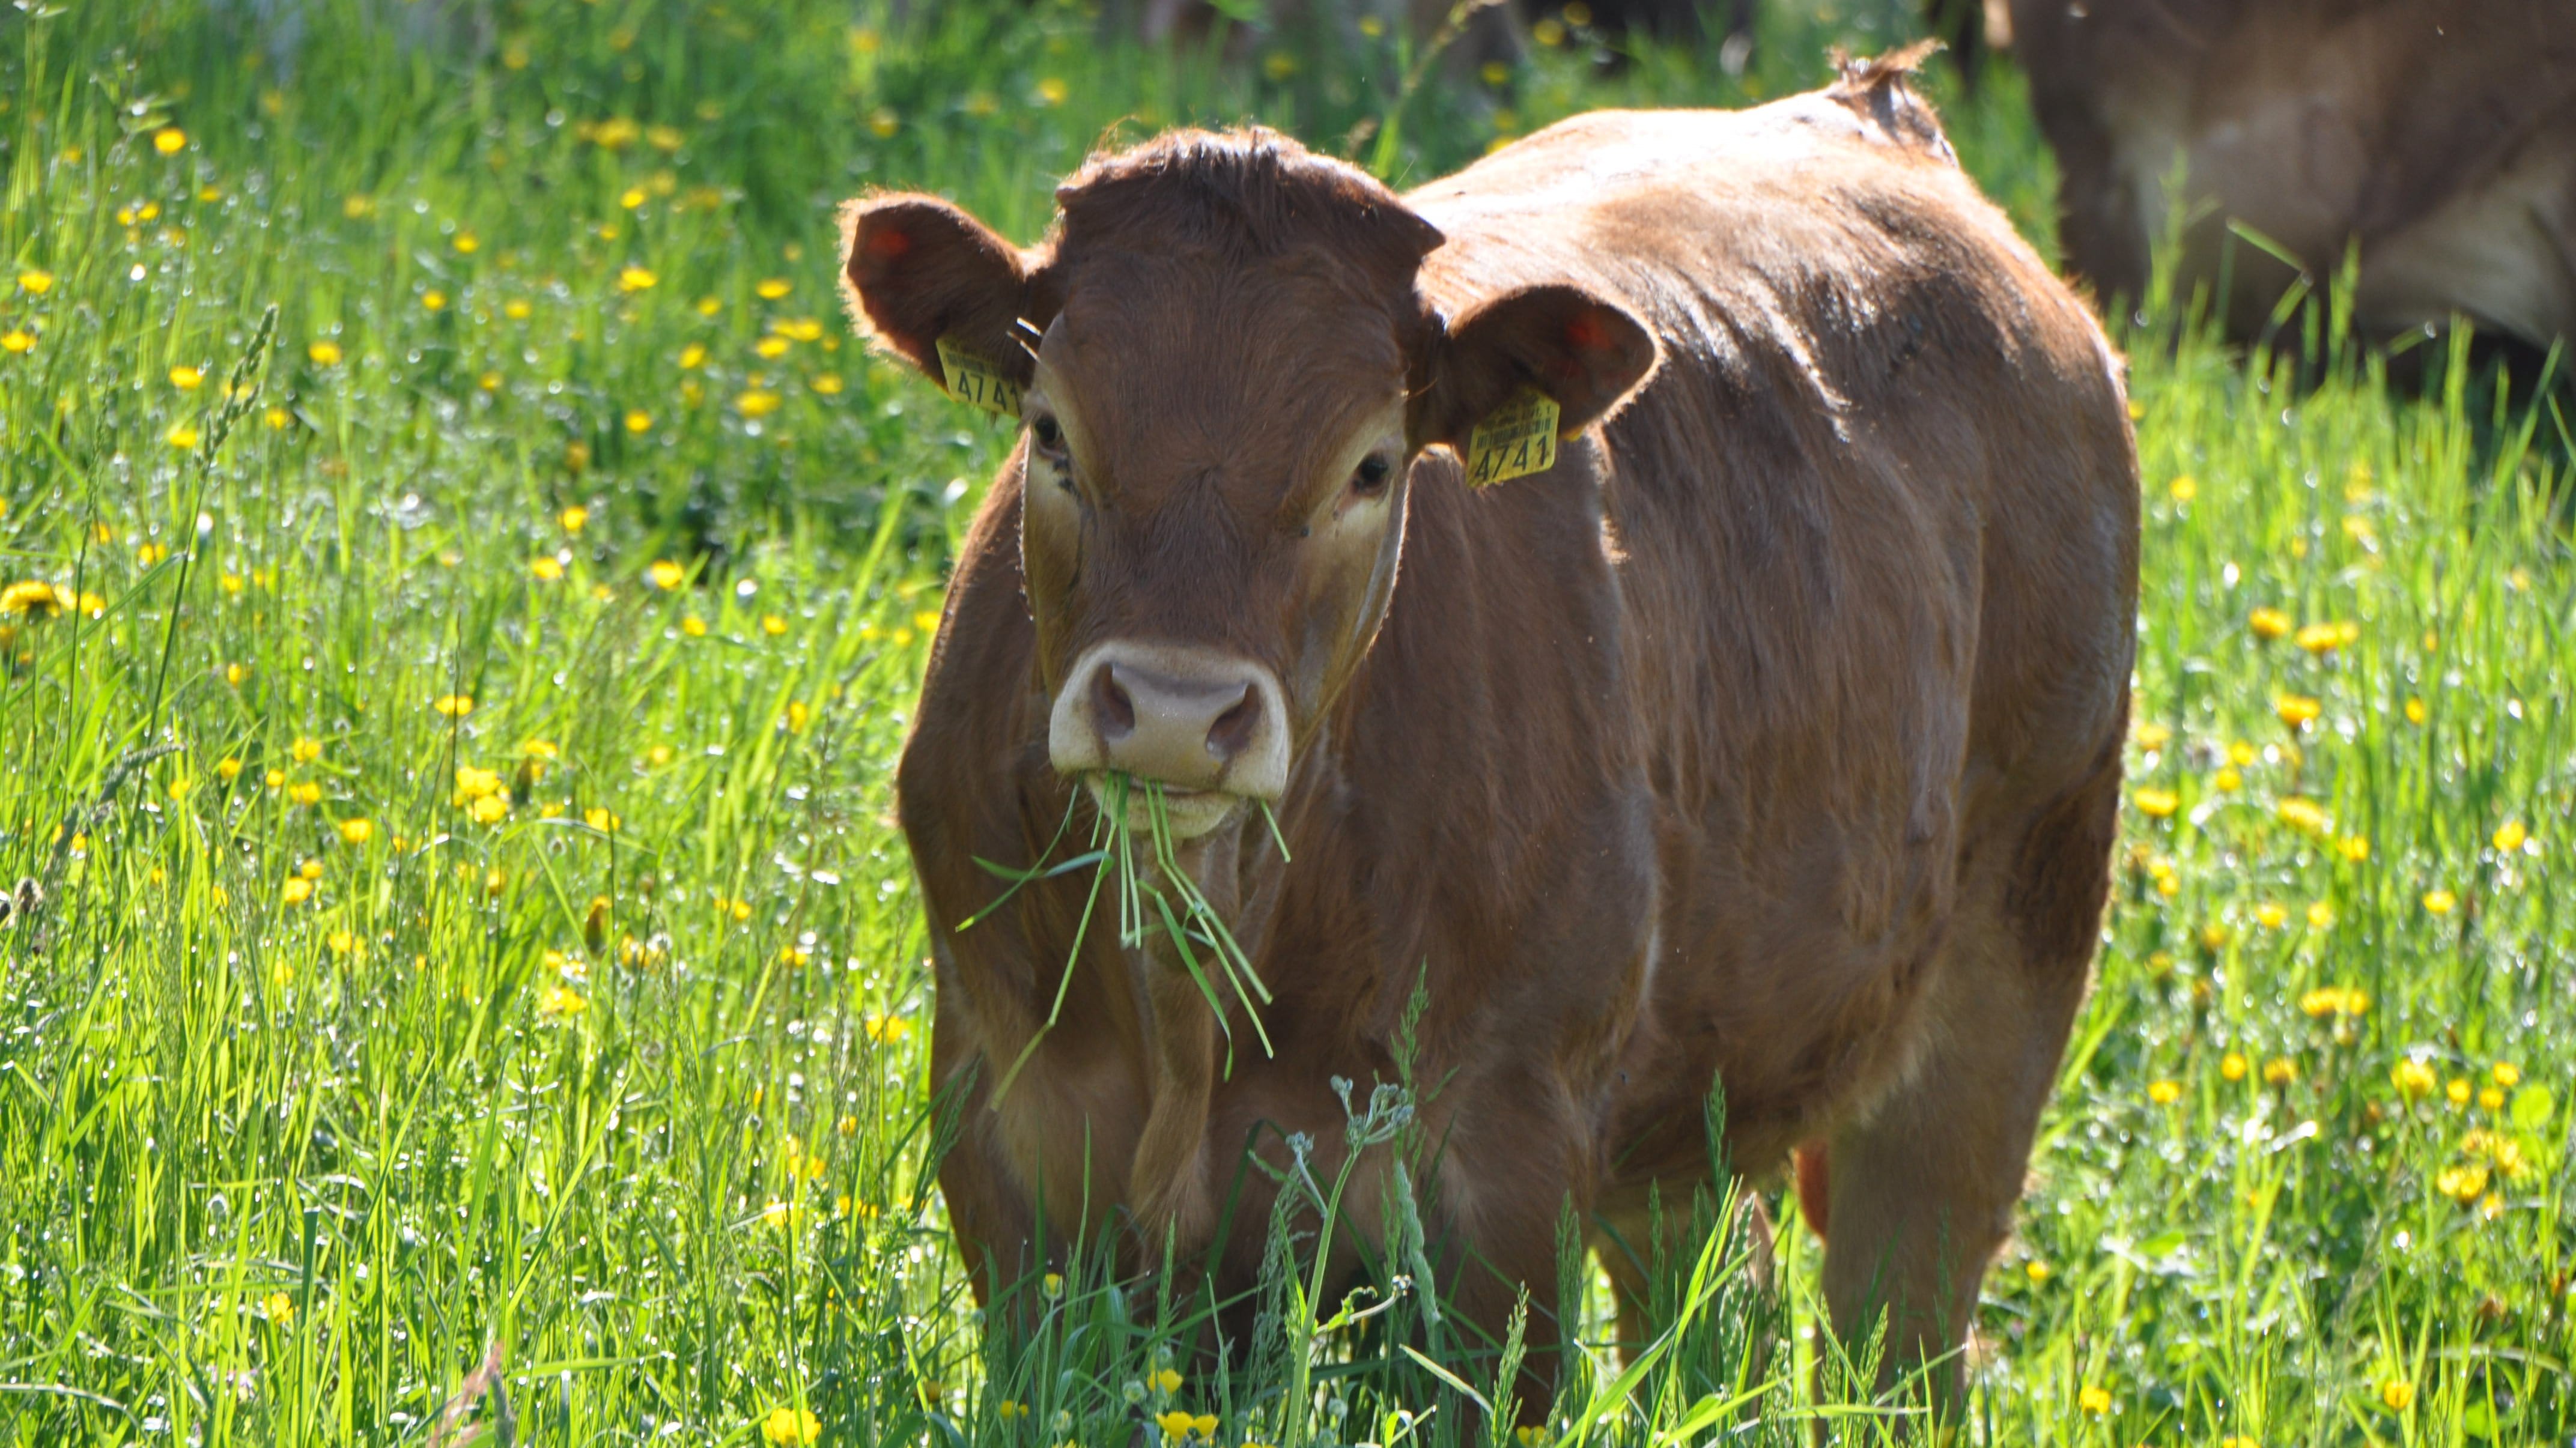 Mutterkühe fressen hauptsächlich oder ausschliesslich Gras und Heu.